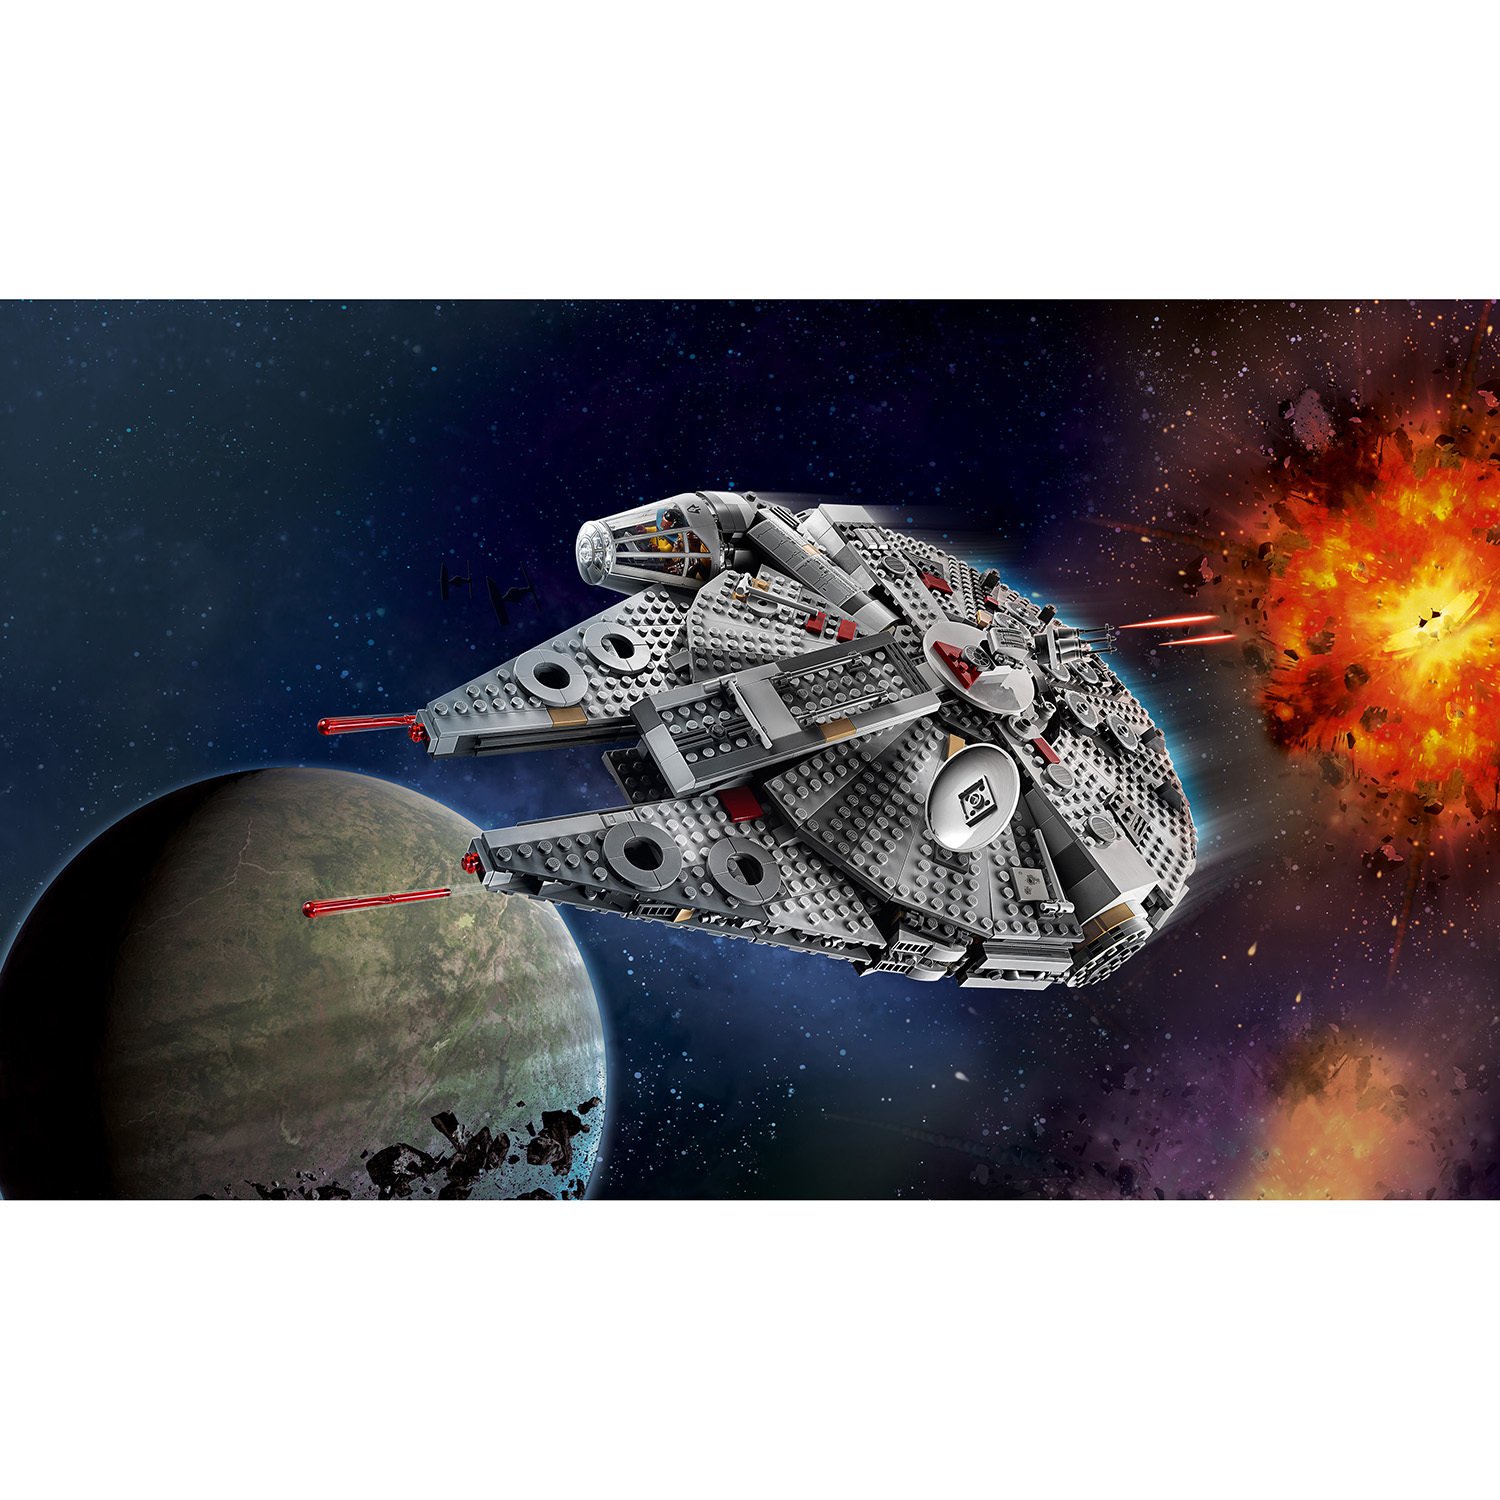 Lego Star Wars 75257 Сокол Тысячелетия